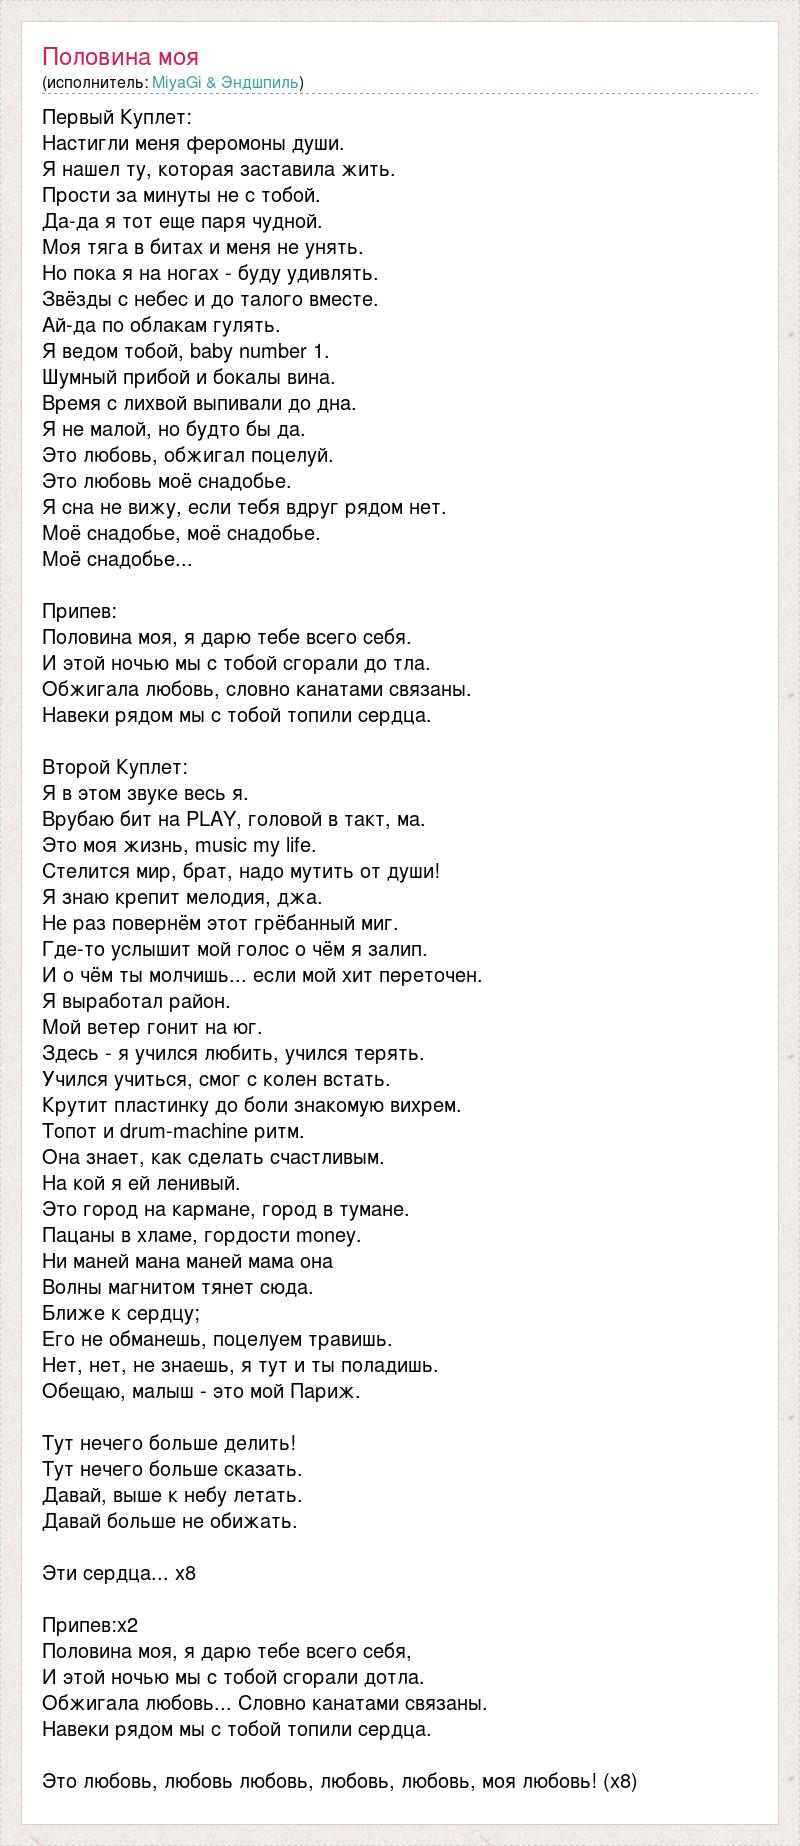 Текст песни Половина моя я дарю тебе всего себя muzmo.ru, слова. 